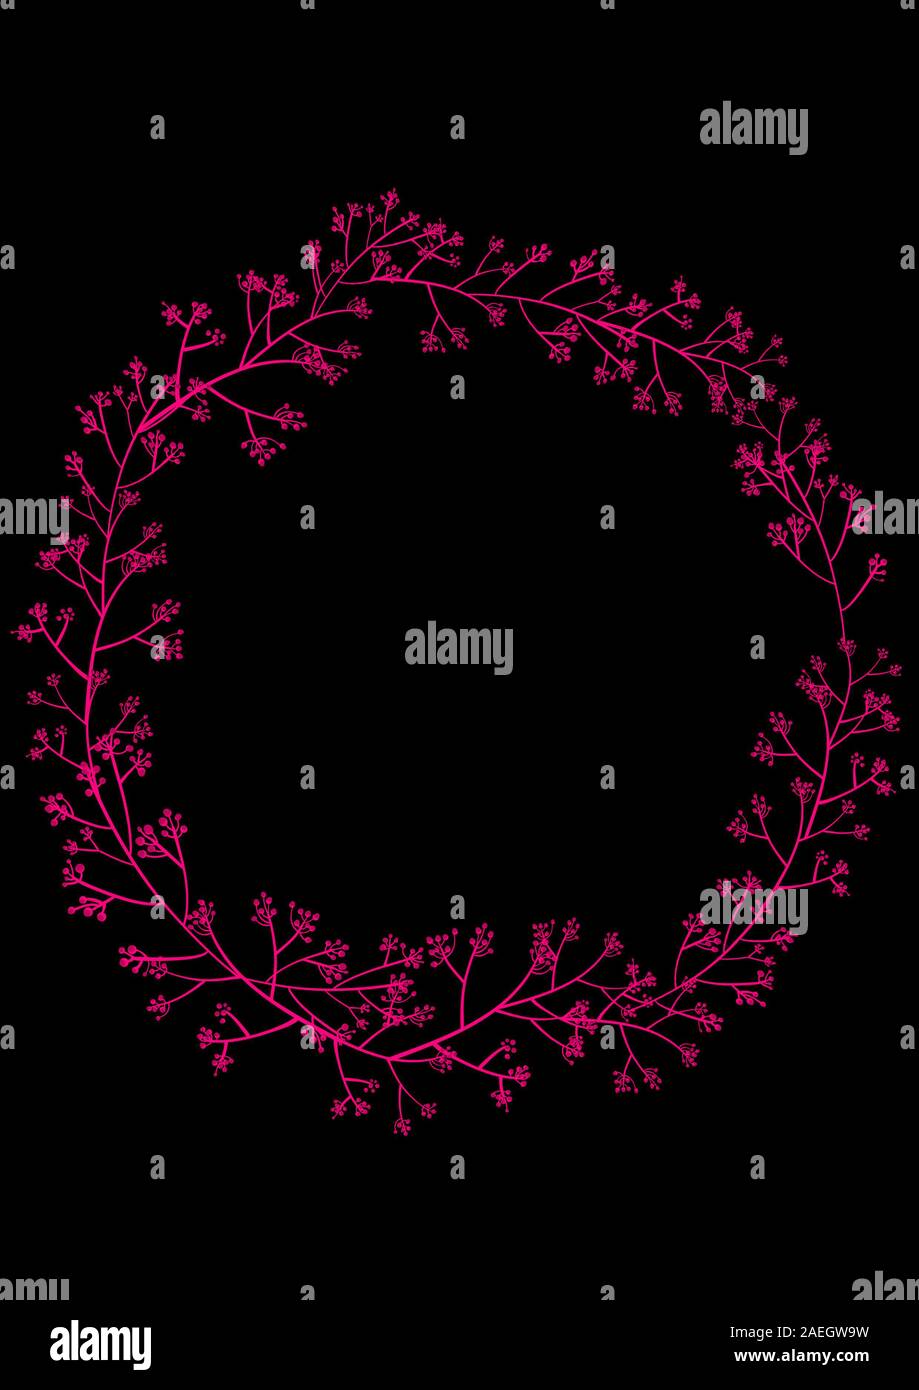 Eine Illustration, Grafik Poster von einfachen Kranz, Rahmen in Pink, Fuchsia Farbe auf Schwarz, dunklen Hintergrund isoliert. Frame fo ein Angebot. Stockfoto